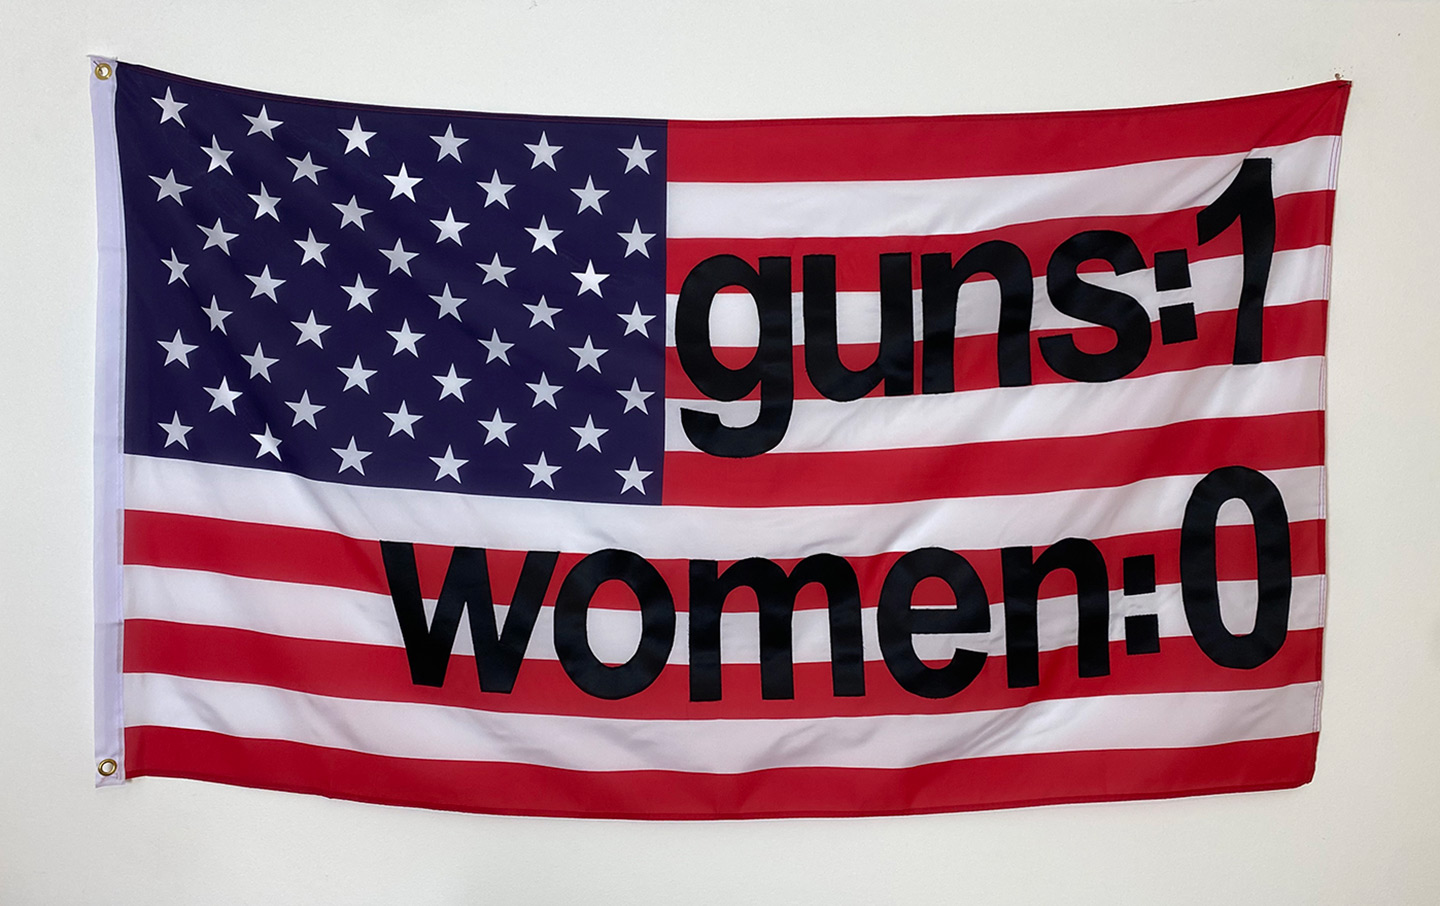 Women and Guns